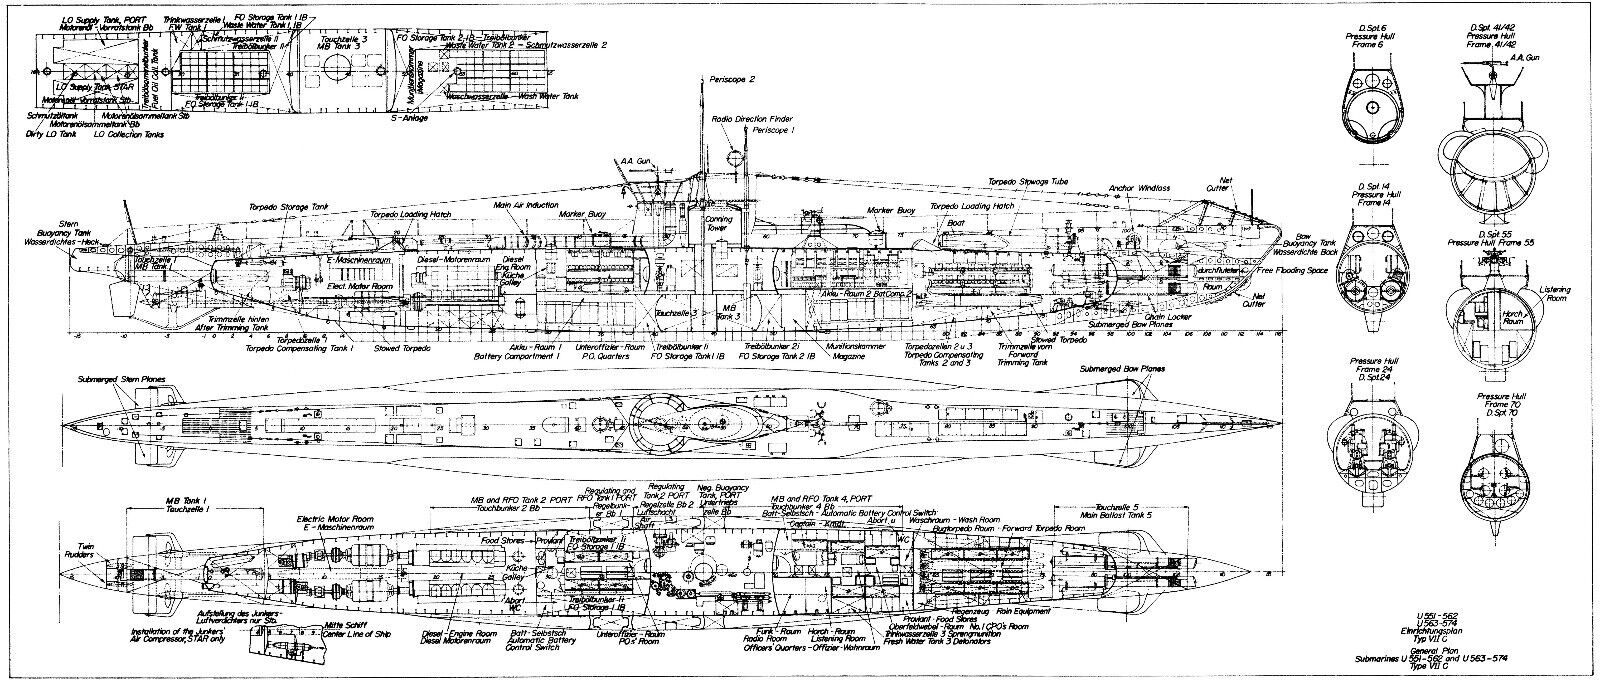 U-BOAT TYPE VIIC GERMAN SUBMARINE DETAILED PLAN KRIEGSMARINE UNTERSEEBOOT 1939